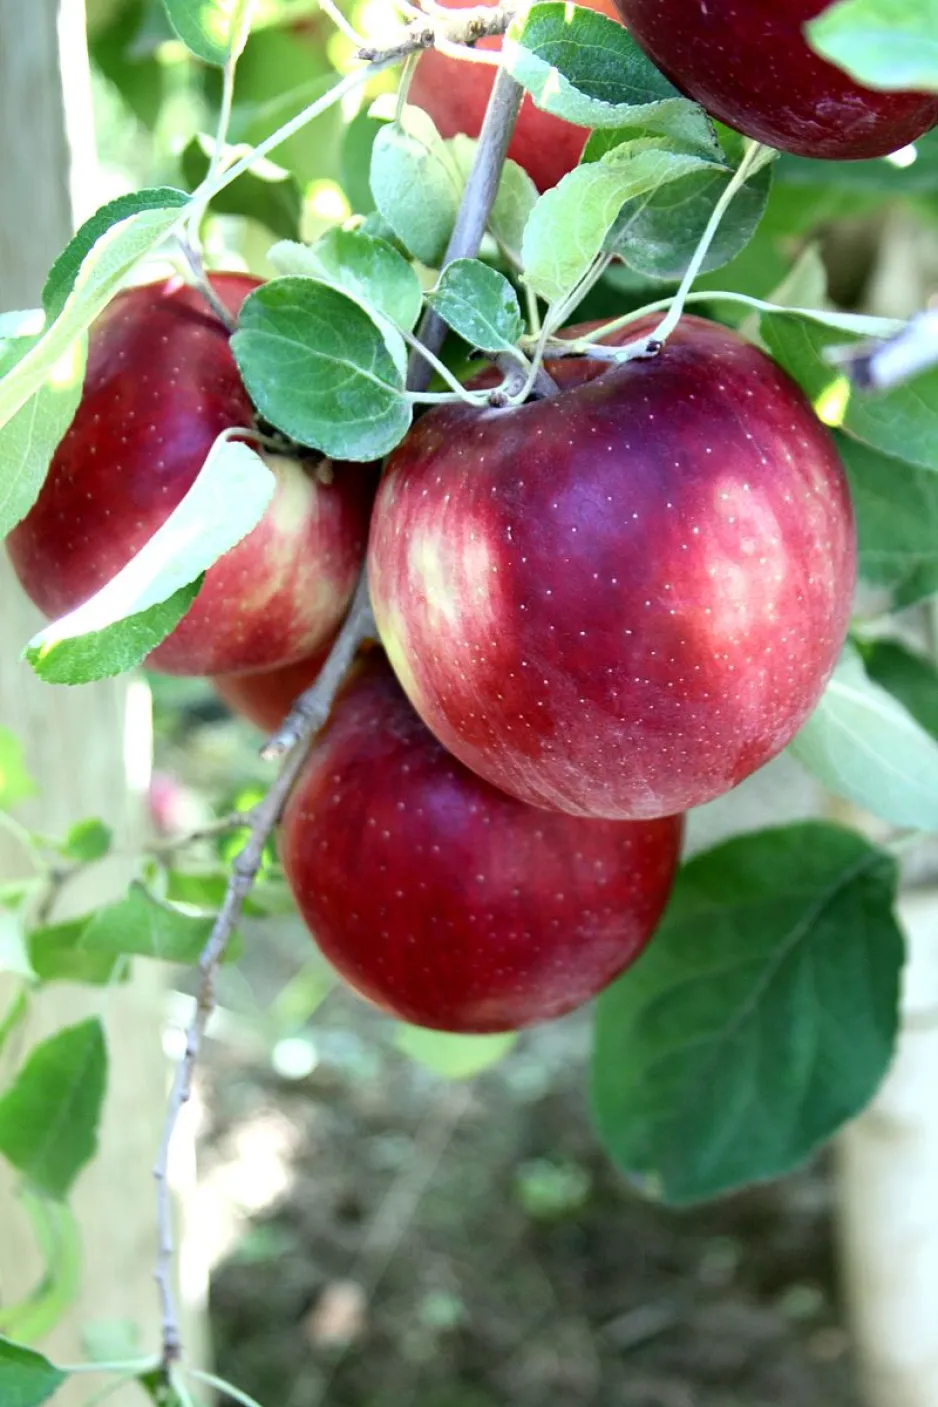 Plusieurs pommes rouges Cosmic Crisp sur une branche, parmi les feuilles vertes.